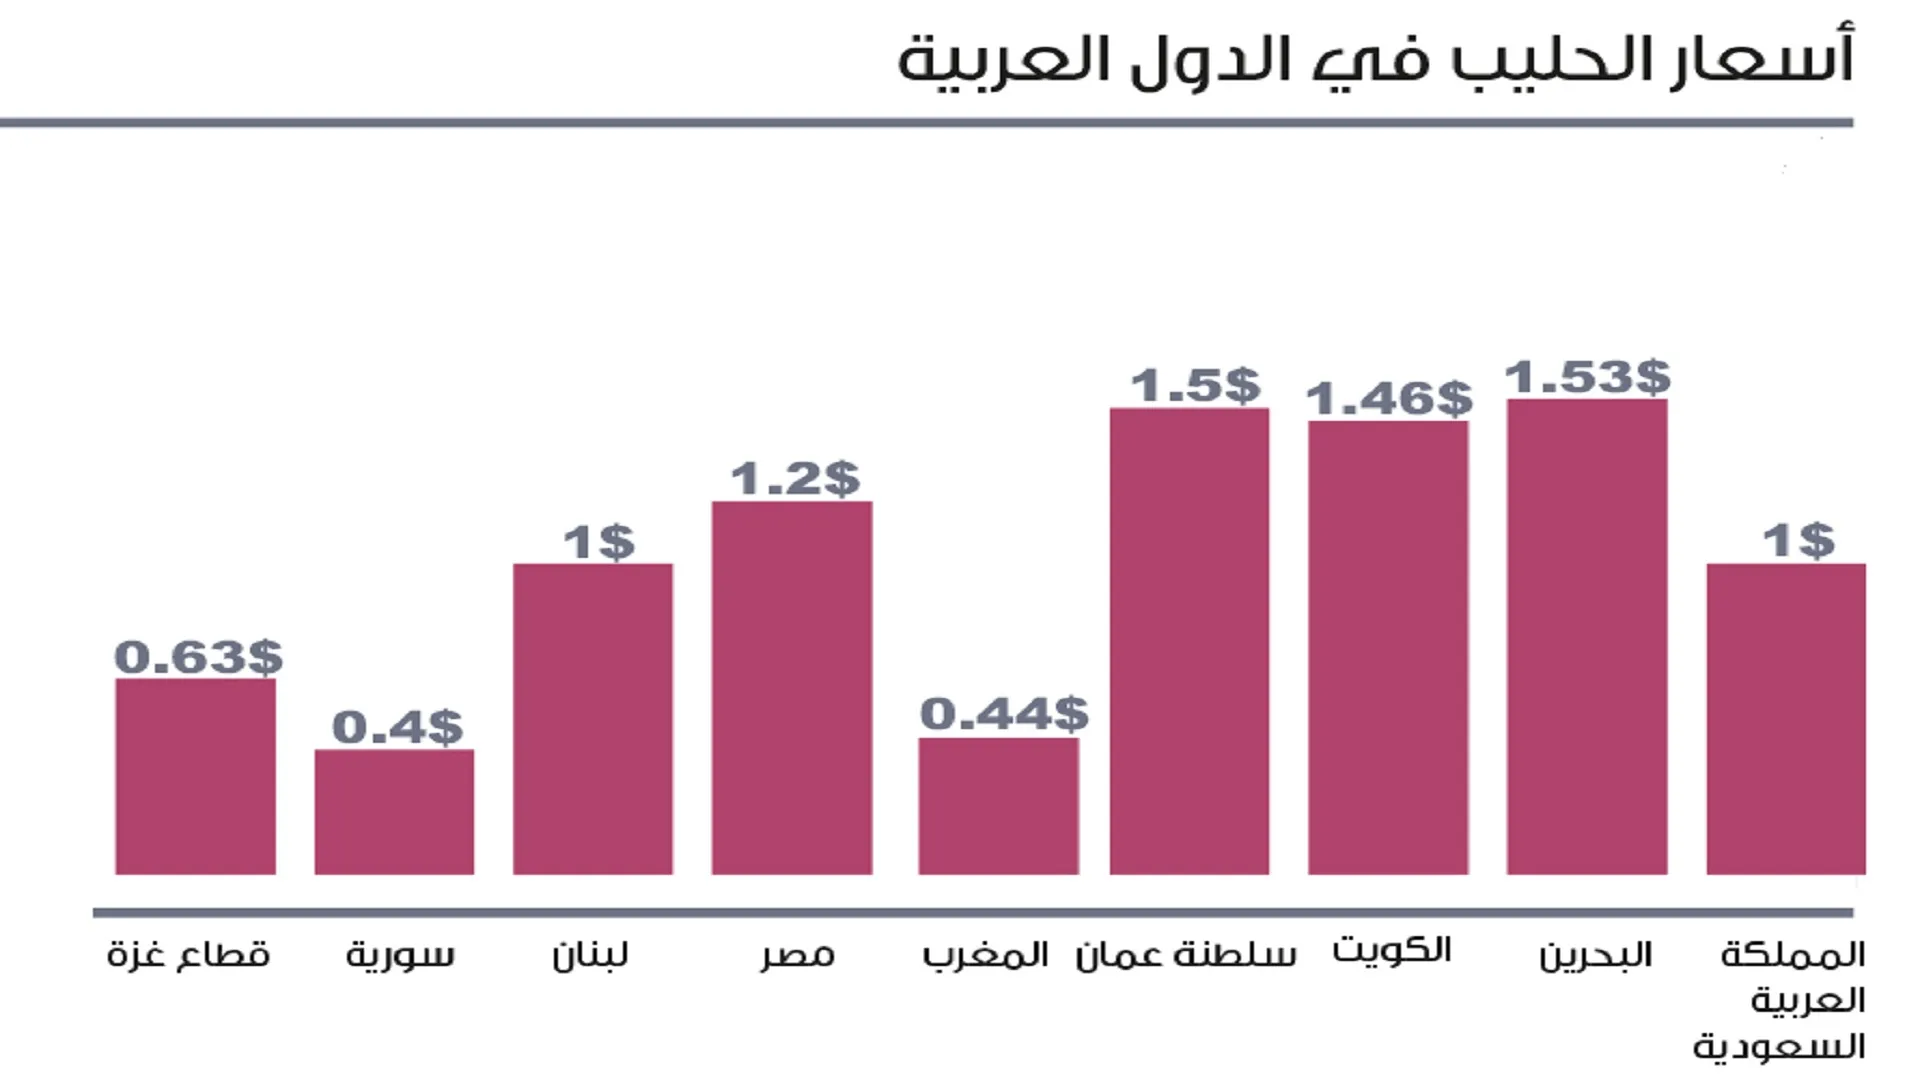 تفاوت قیمت شیر در کشورهای عربی